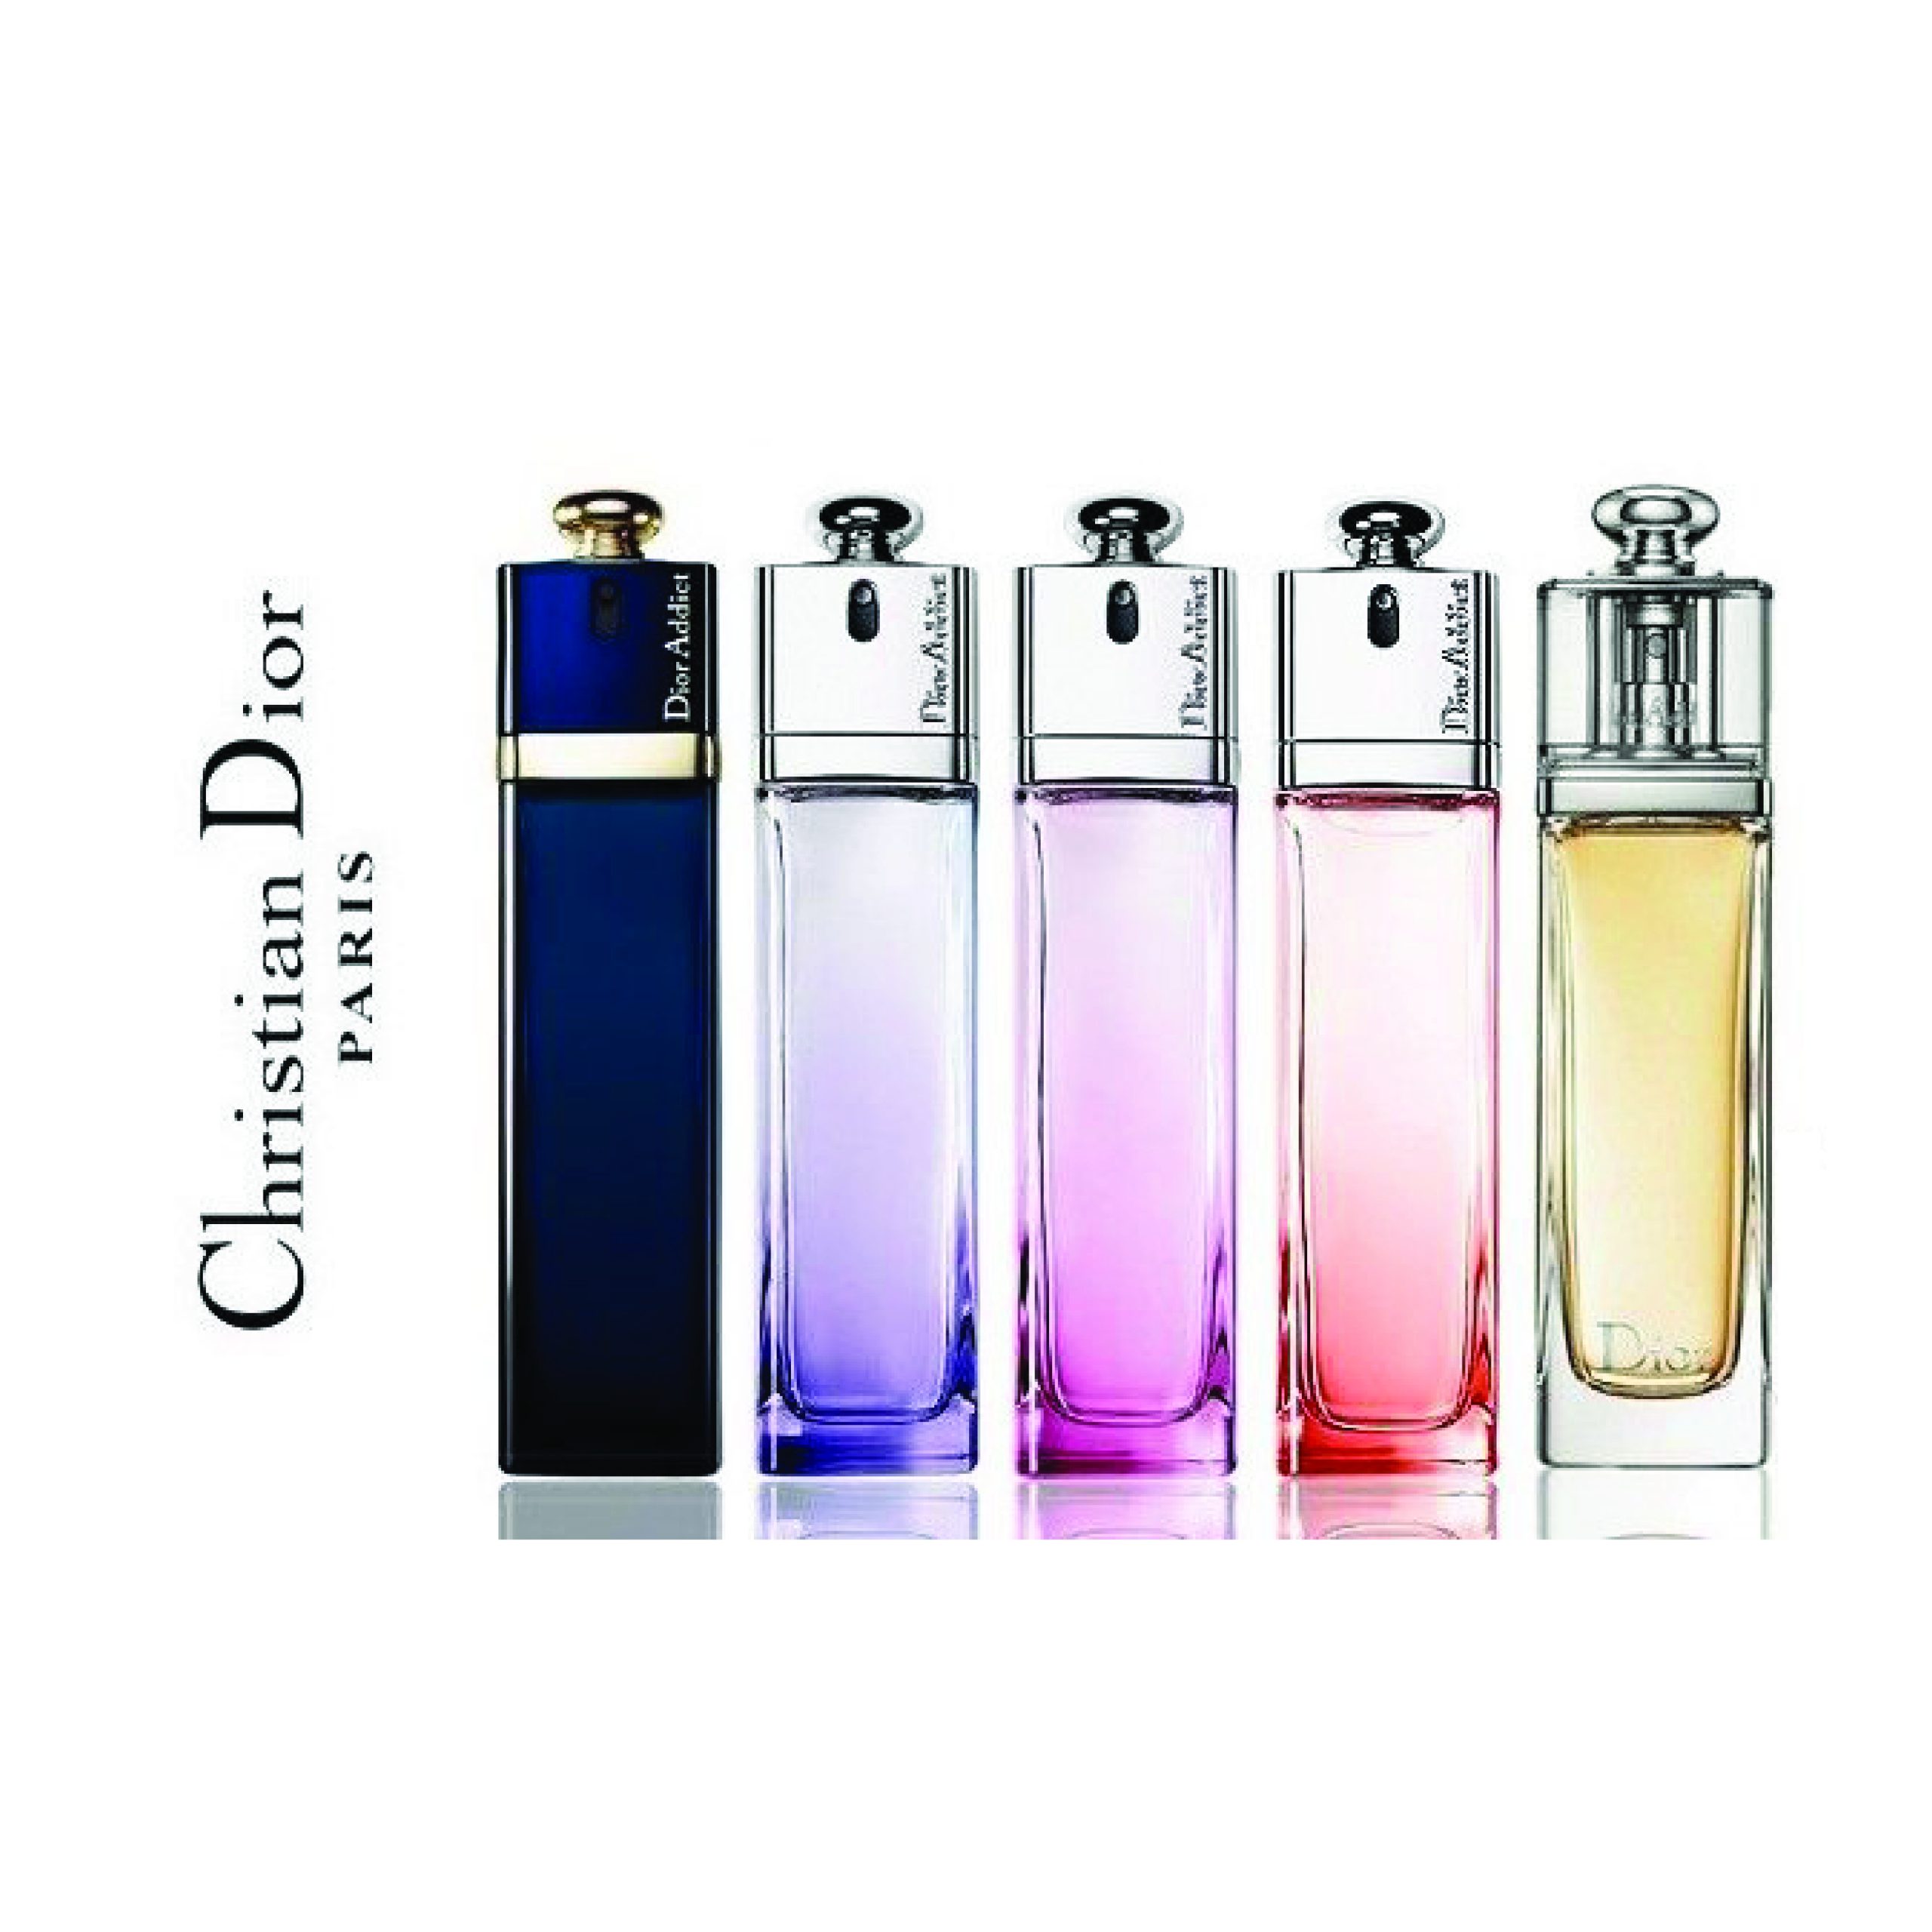 Diors New Élixir Précieux Perfume Collection  Vogue  Perfume Perfume  collection Fragrance